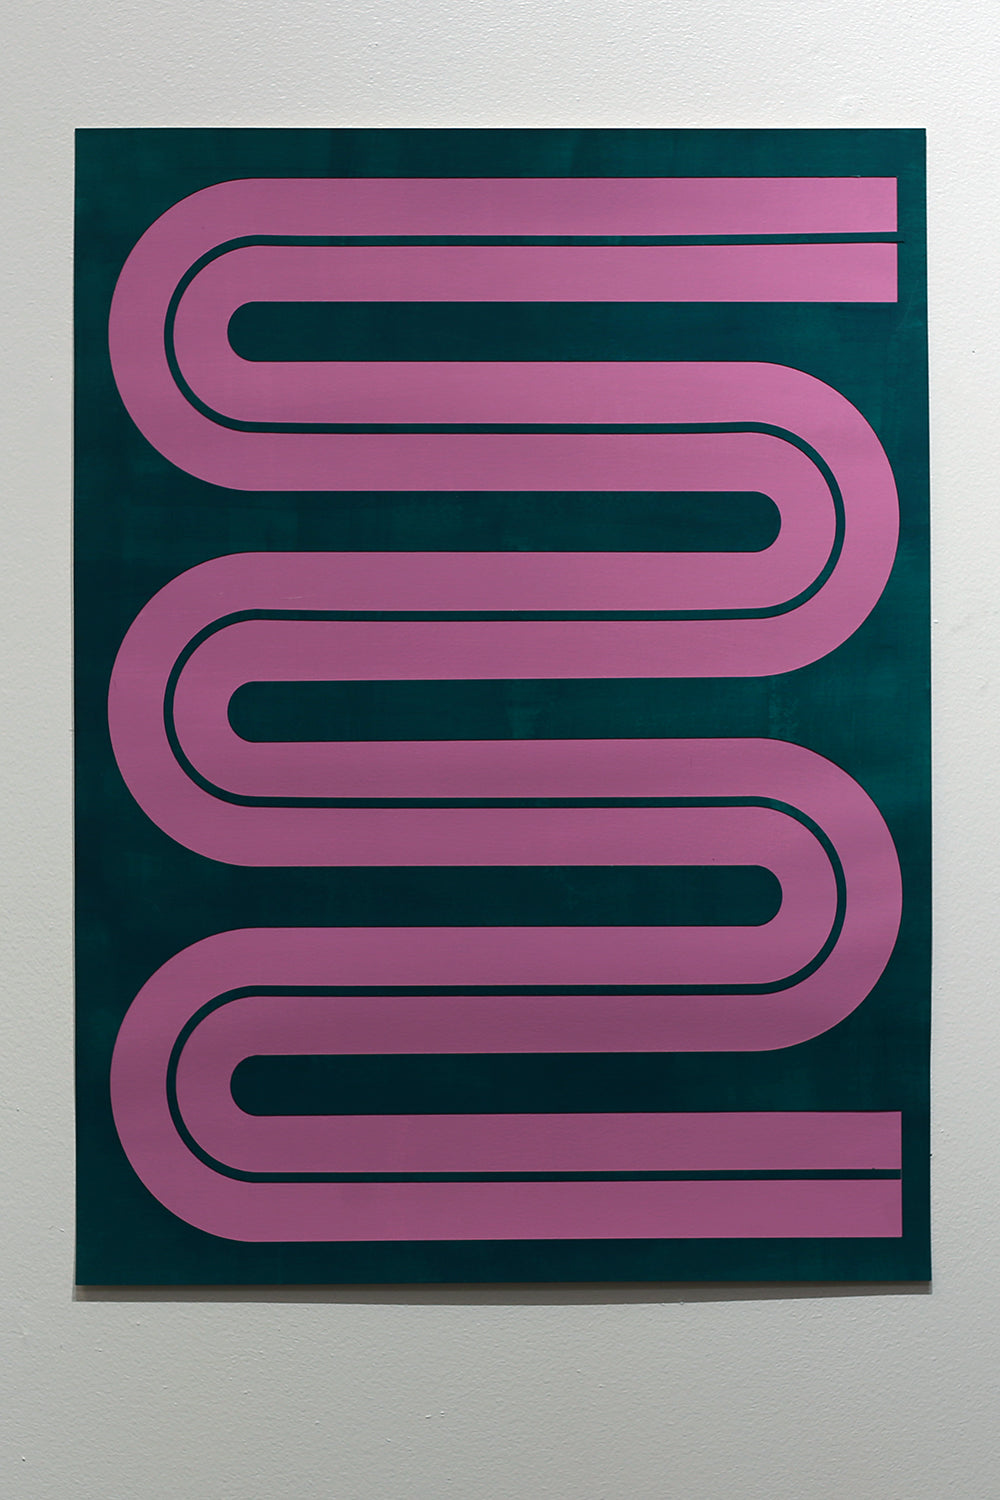 Elspeth Schulze, "Meander Line (Lilac + Emerald)"